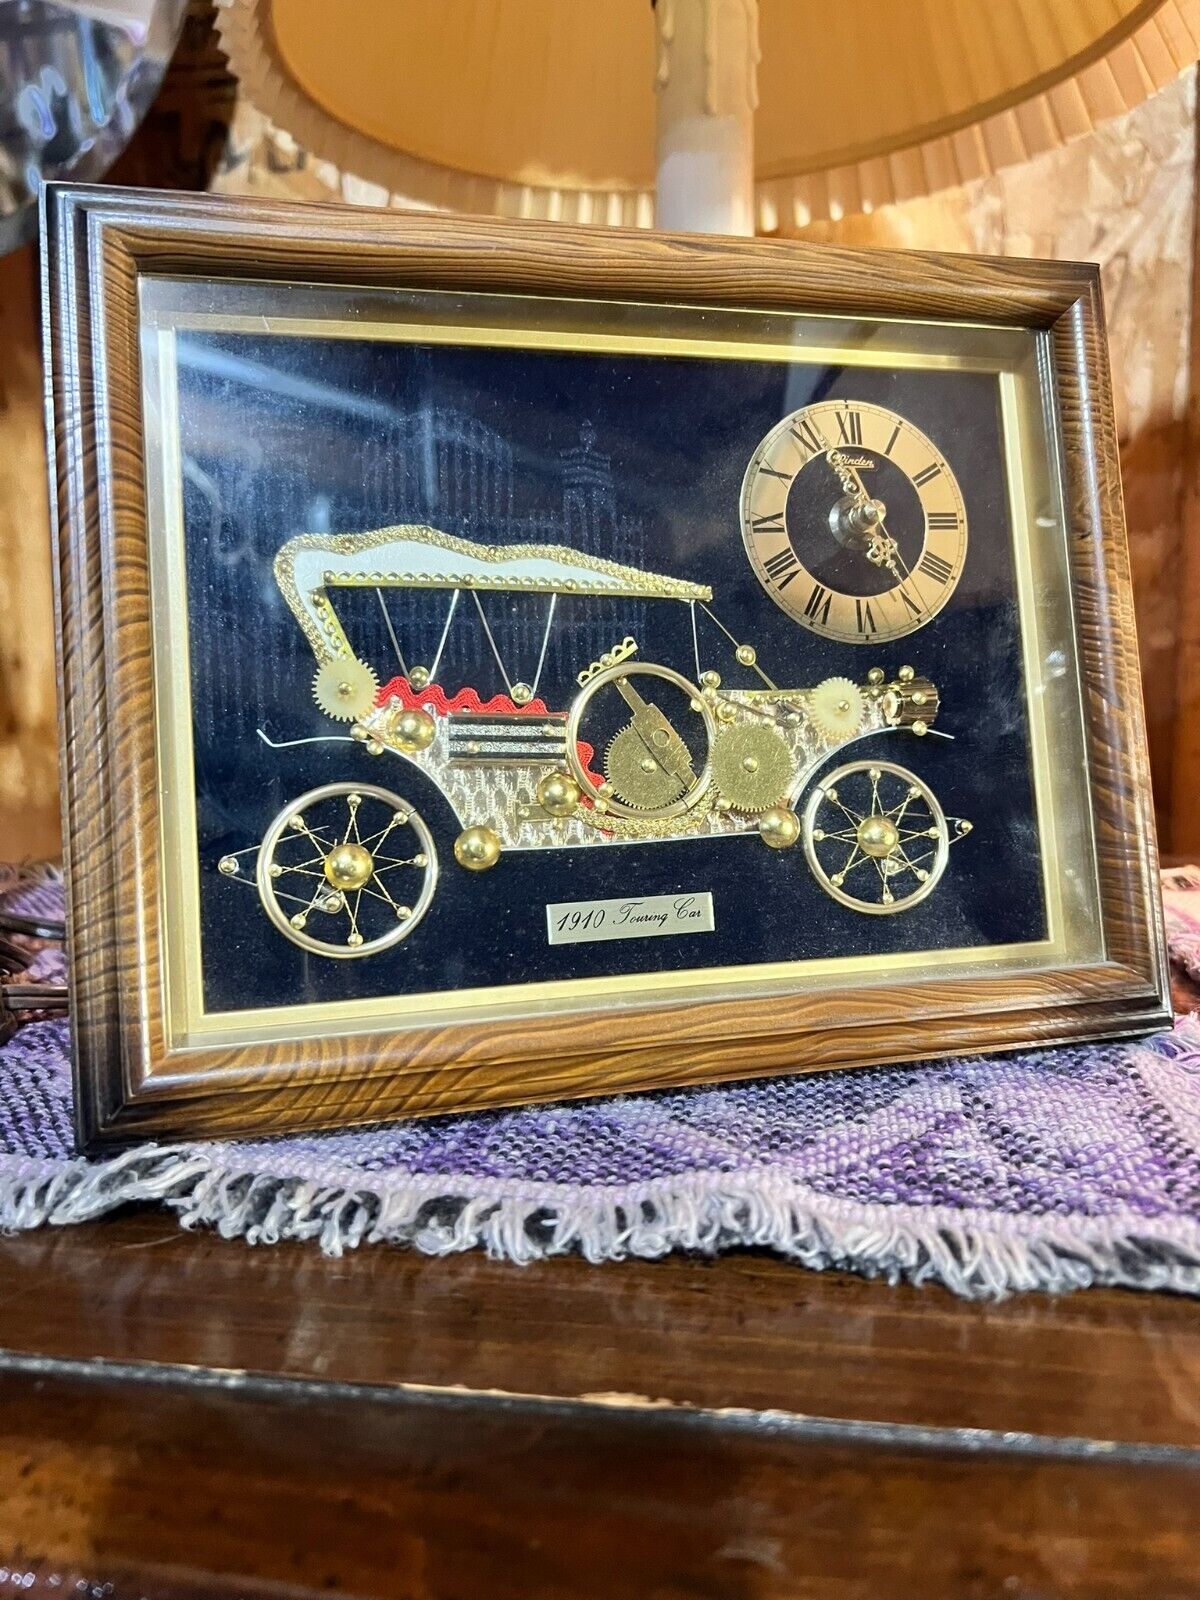 Vintage Linden Quartz Shelf Easel-Back Clock 1910 Touring Car 8 x 10in MCM